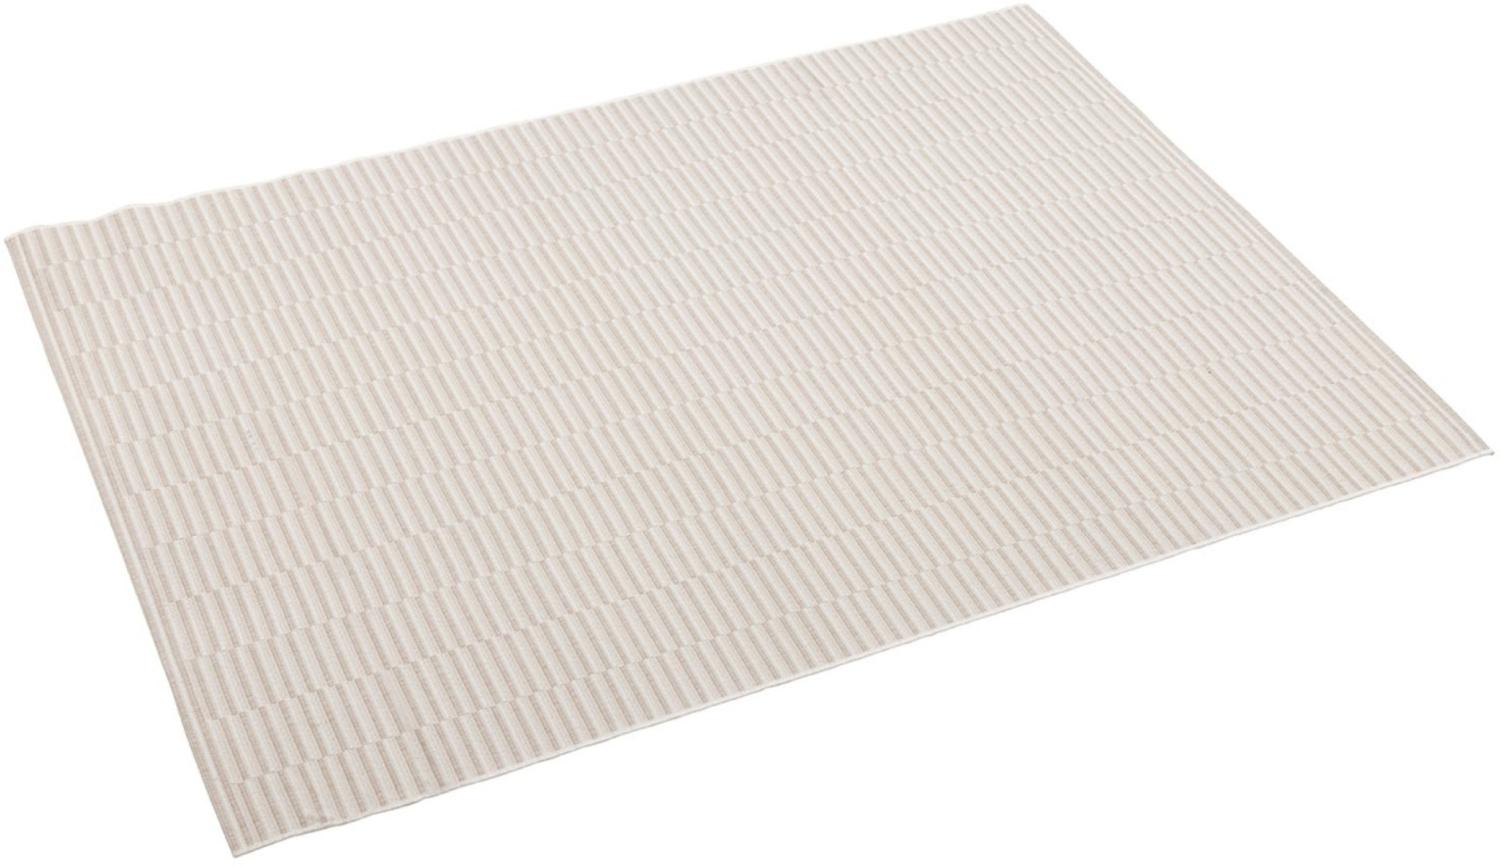 Kettler Outdoorteppich Stripe Größe 160x230 cm, beige grau Bild 1